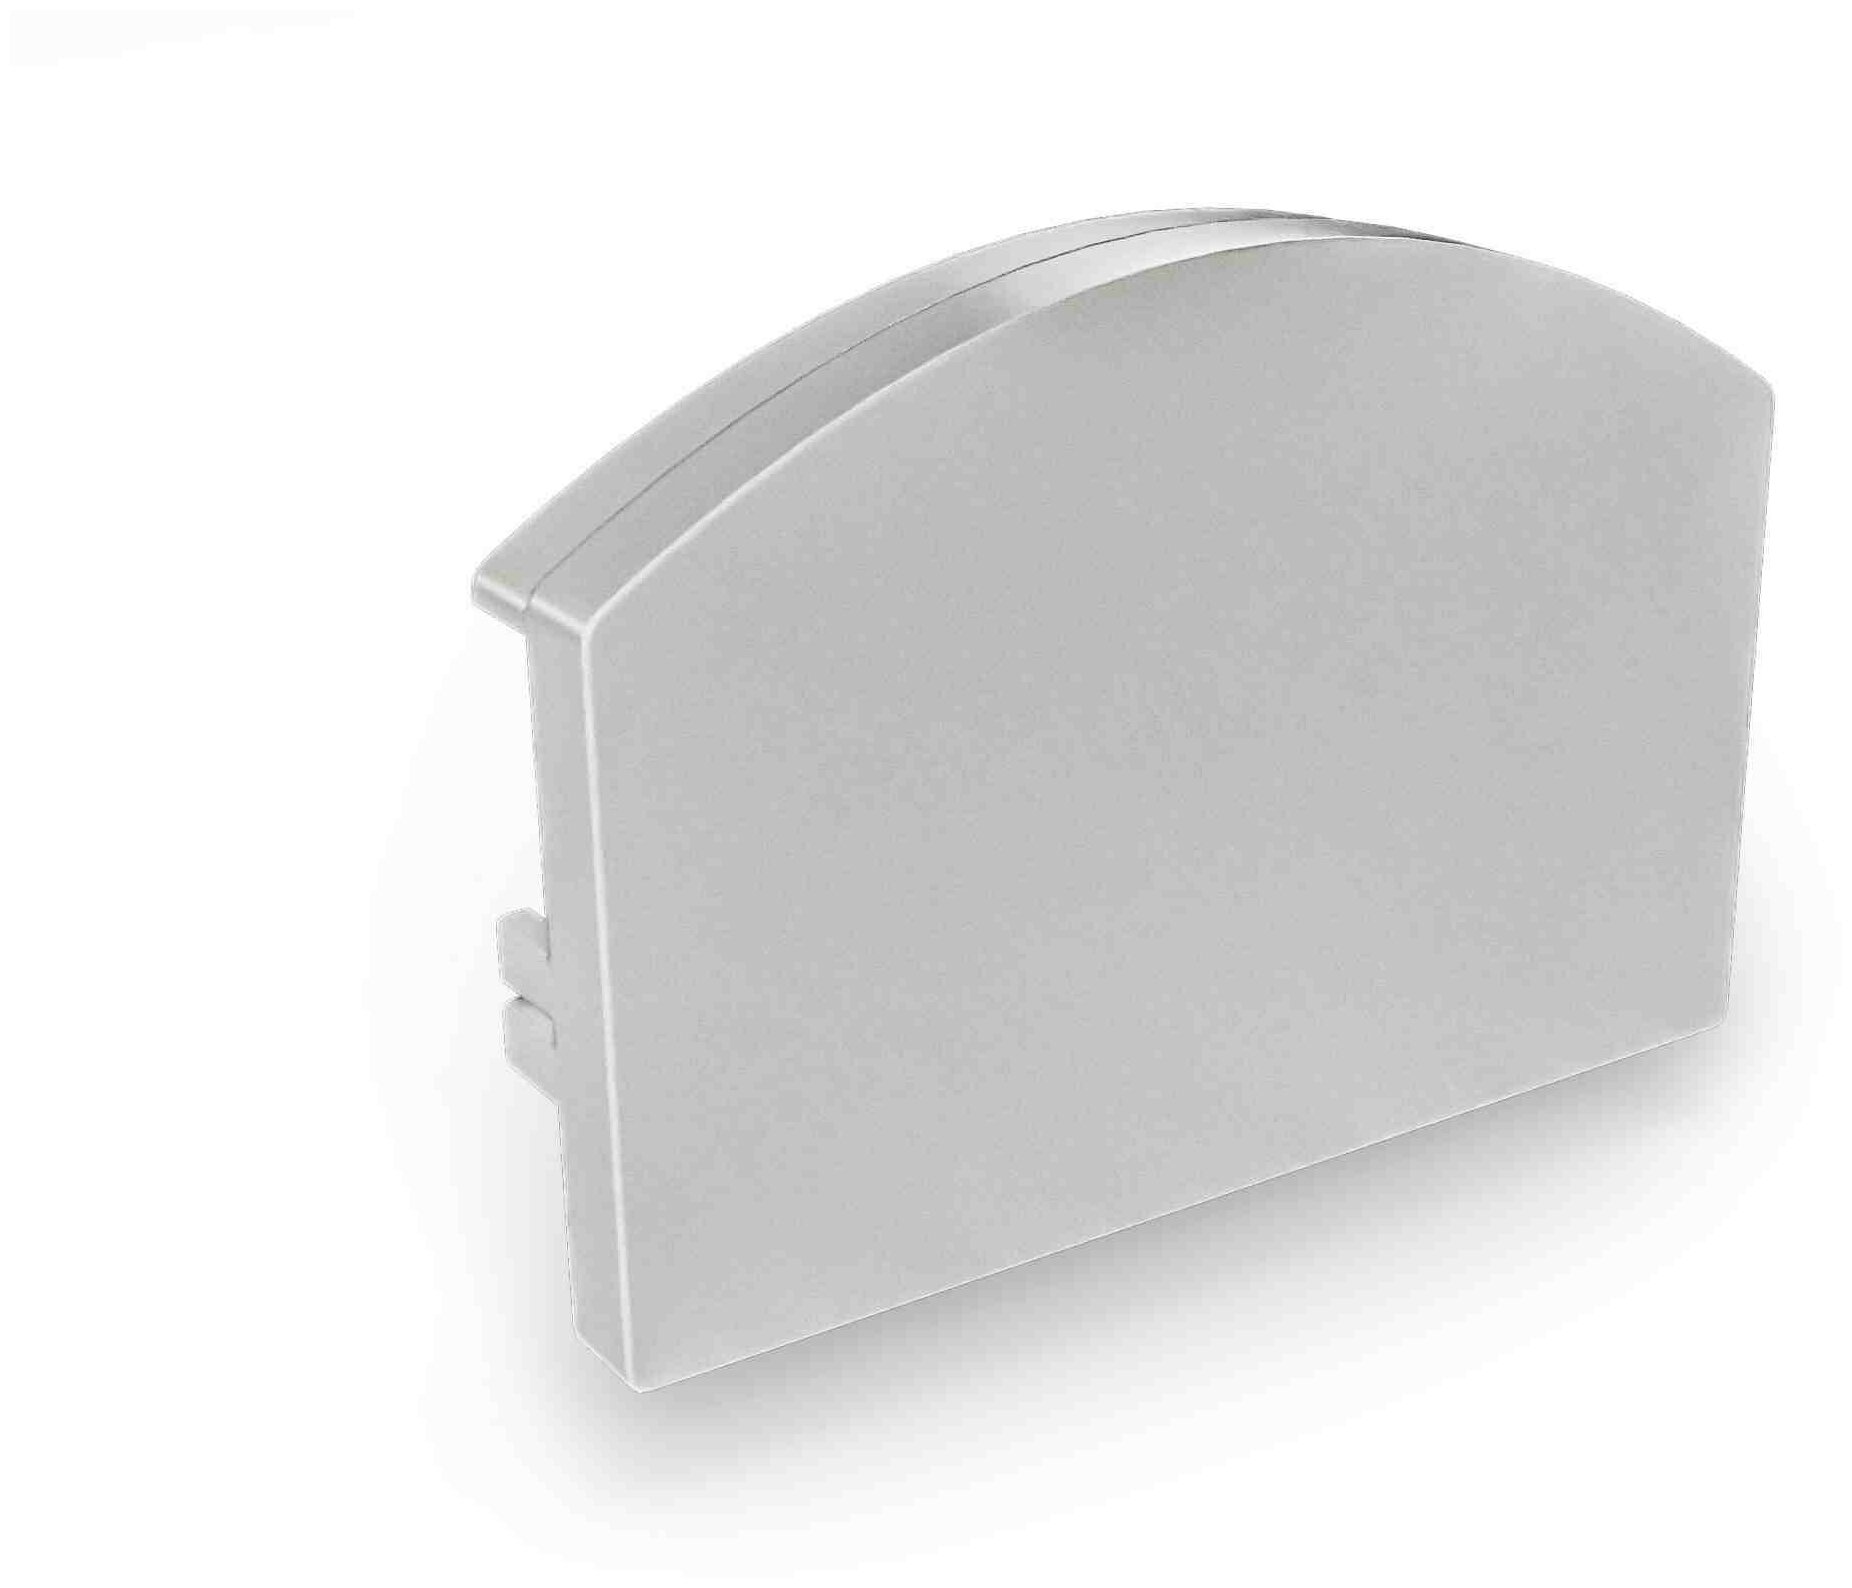 П-образный алюминиевый профиль для установки светодиодной ленты с матовым белым рассеивателем / Профиль для накладного монтажа LED ленты шириной до 20 мм / серебро / 1000х25х20 мм / IP44 / 2 заглушки /08-13